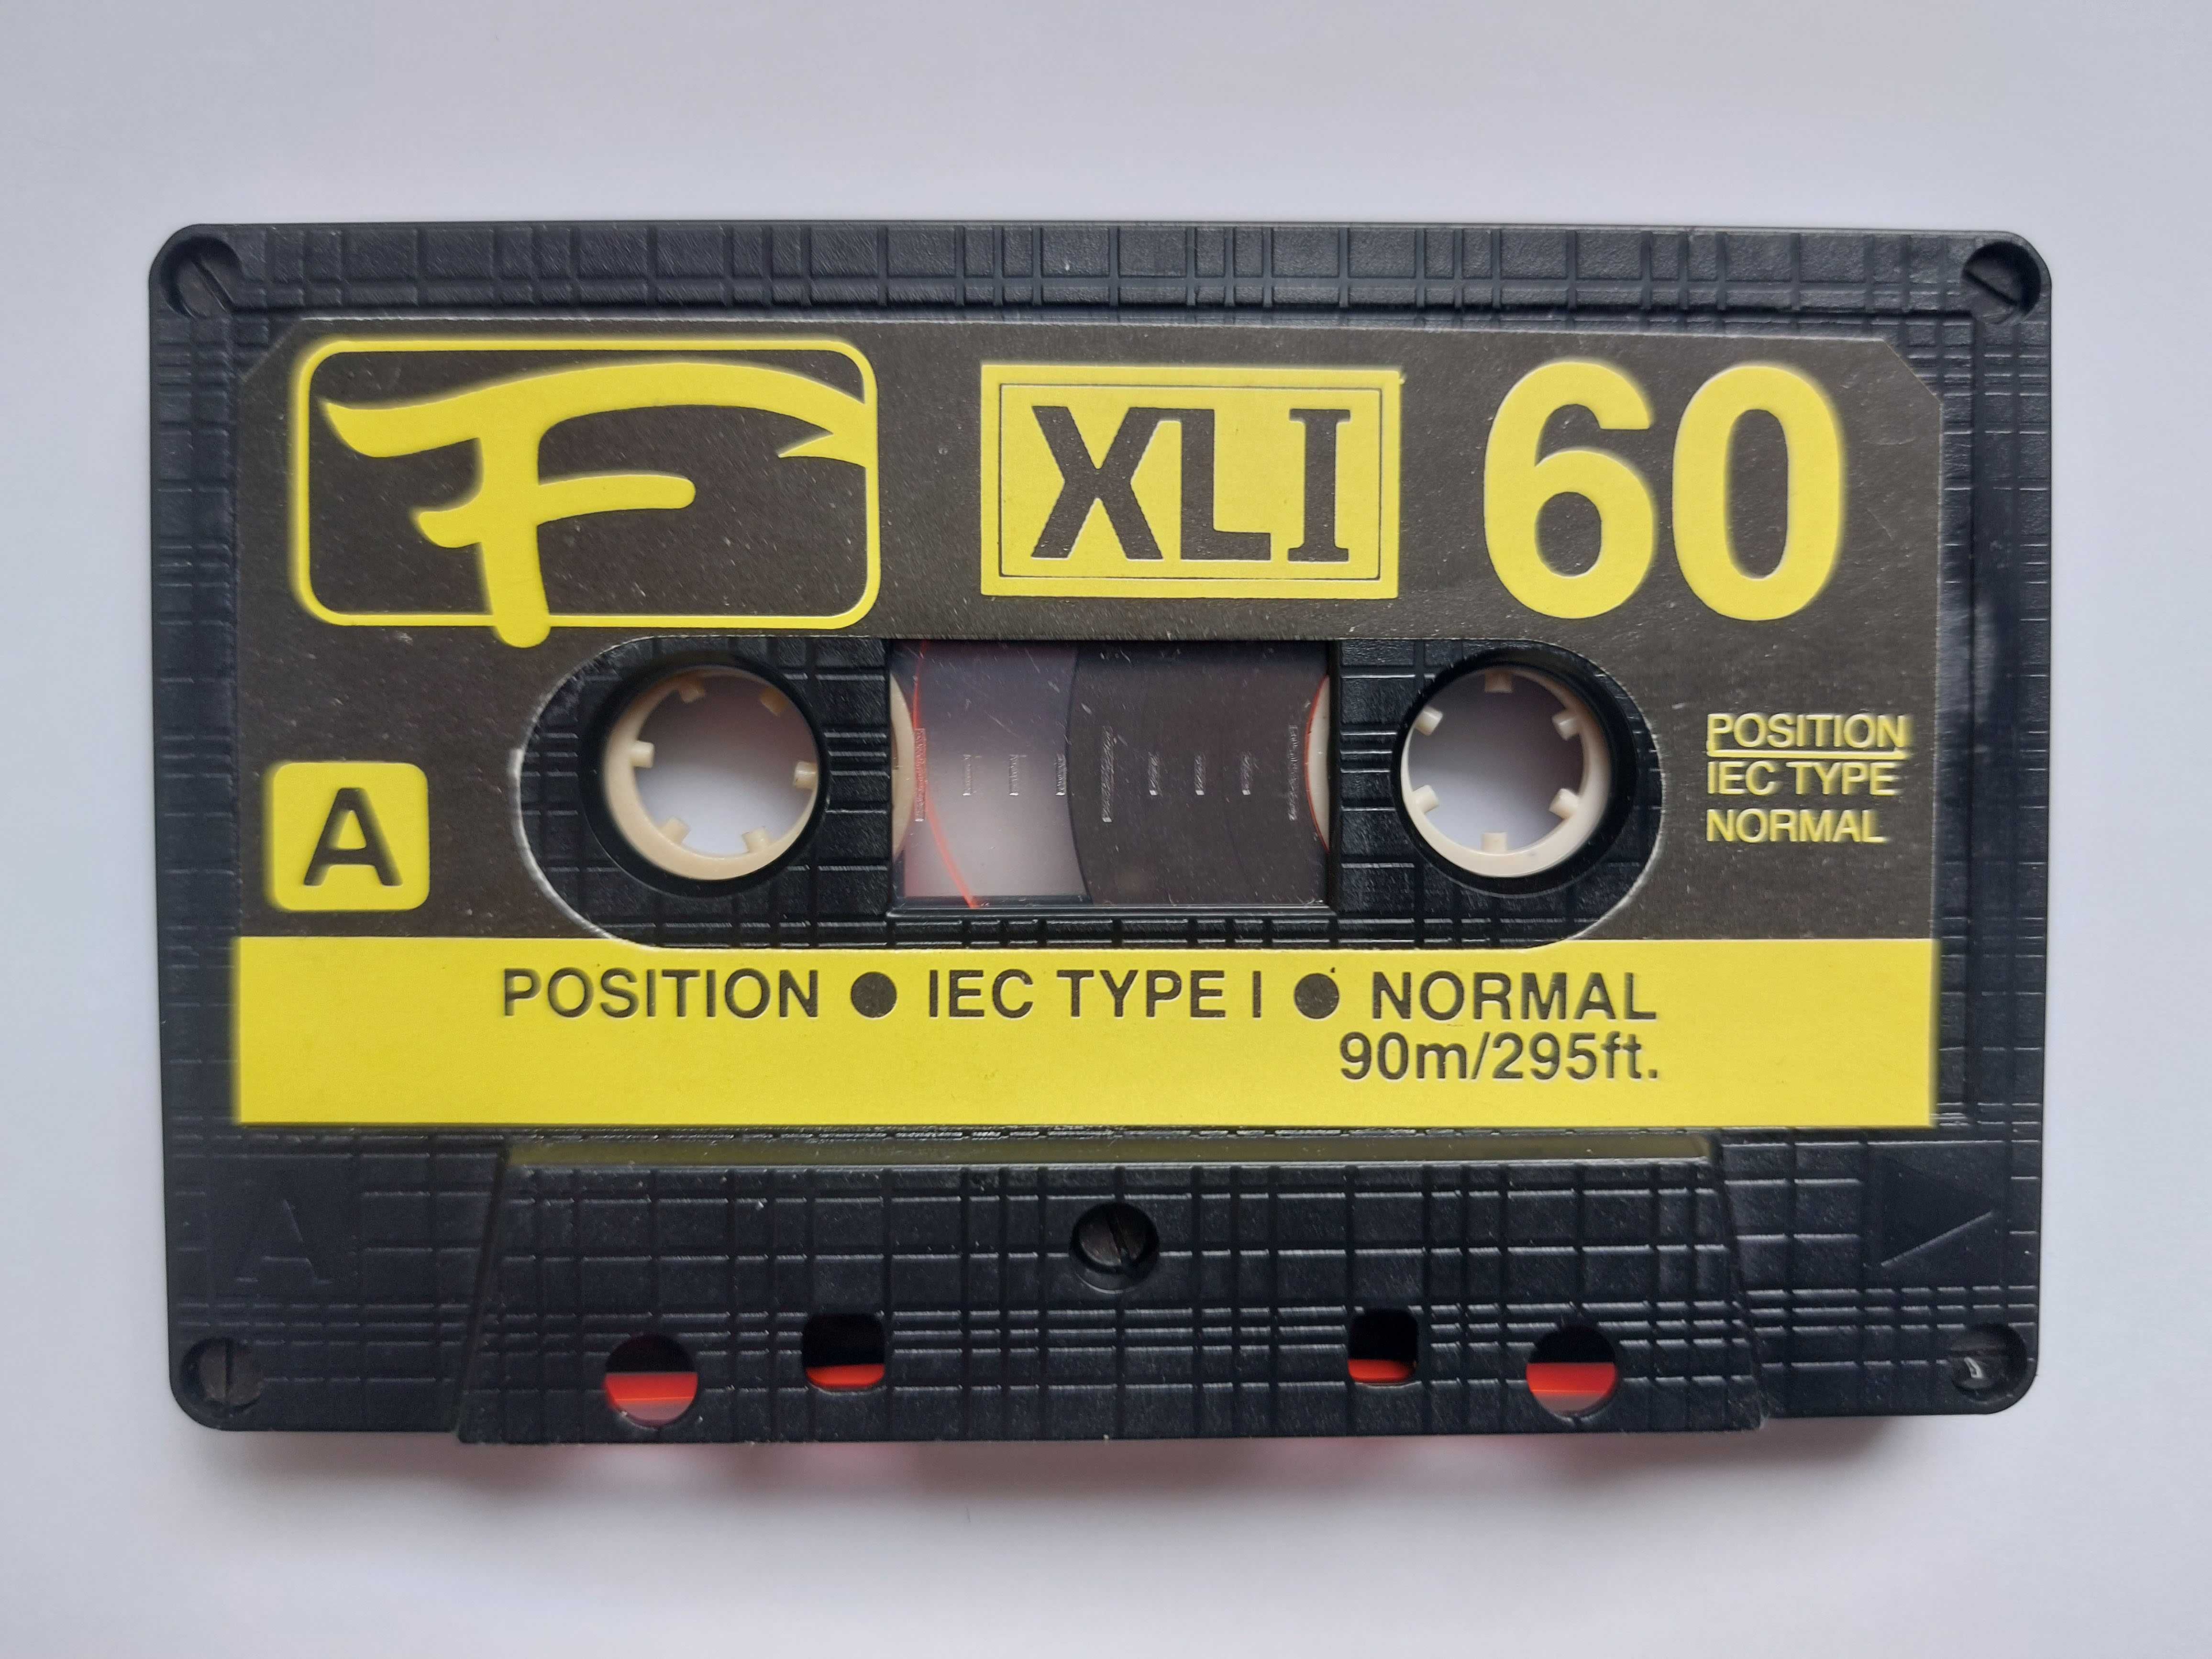 kasety audio używane do powtórnego nagrania - cena za zestaw 17 sztuk